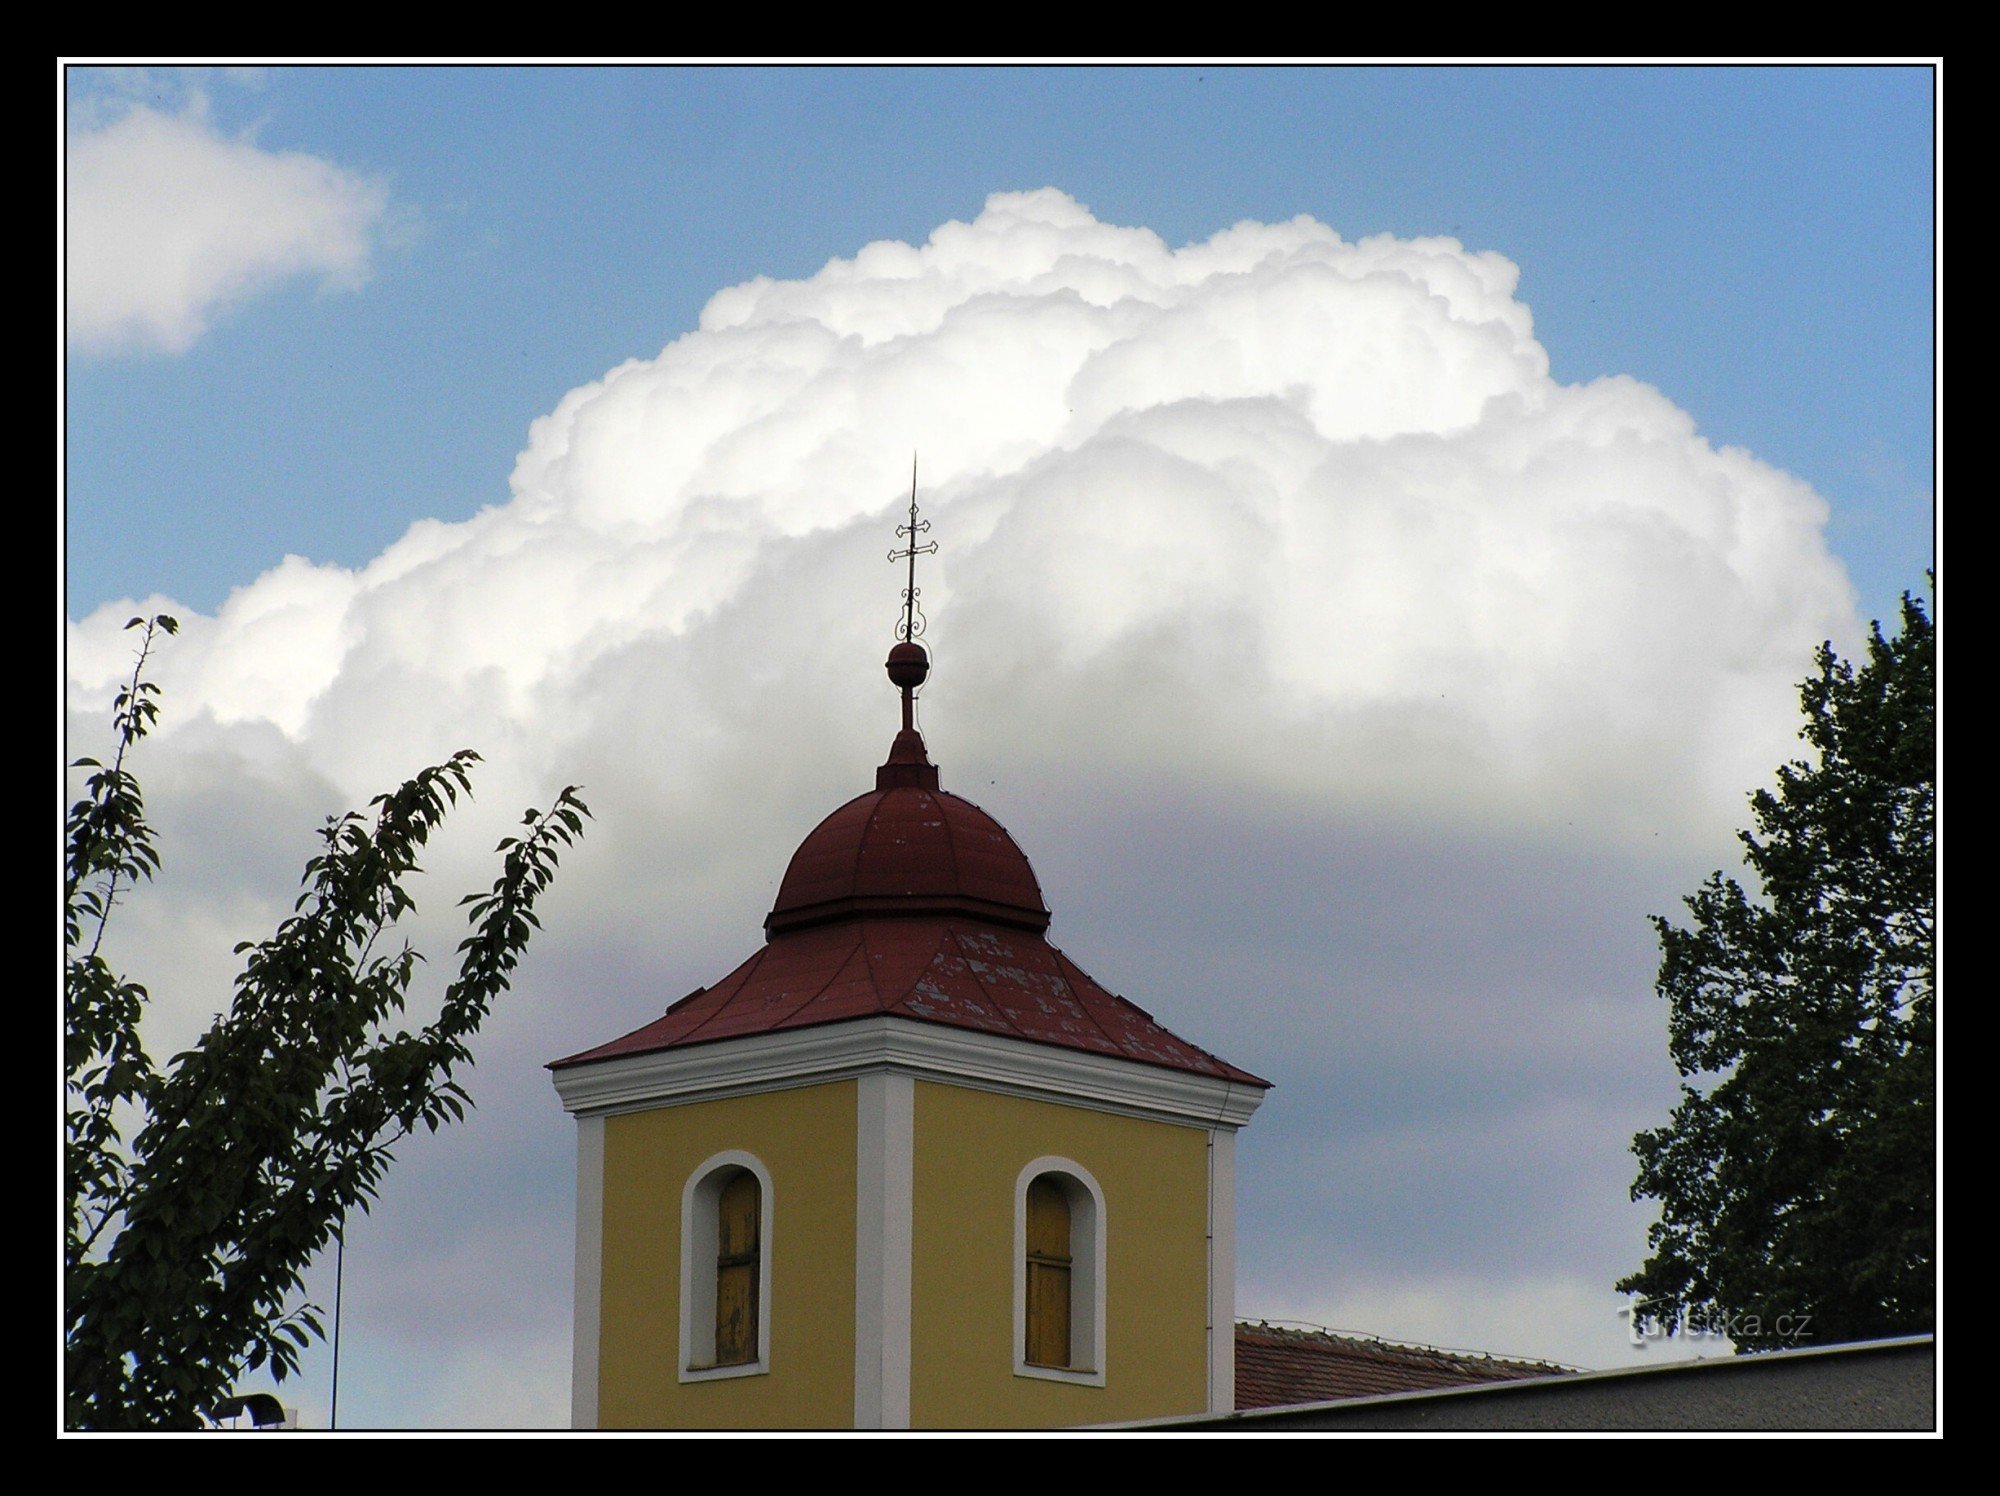 Býšť - crkva sv. George